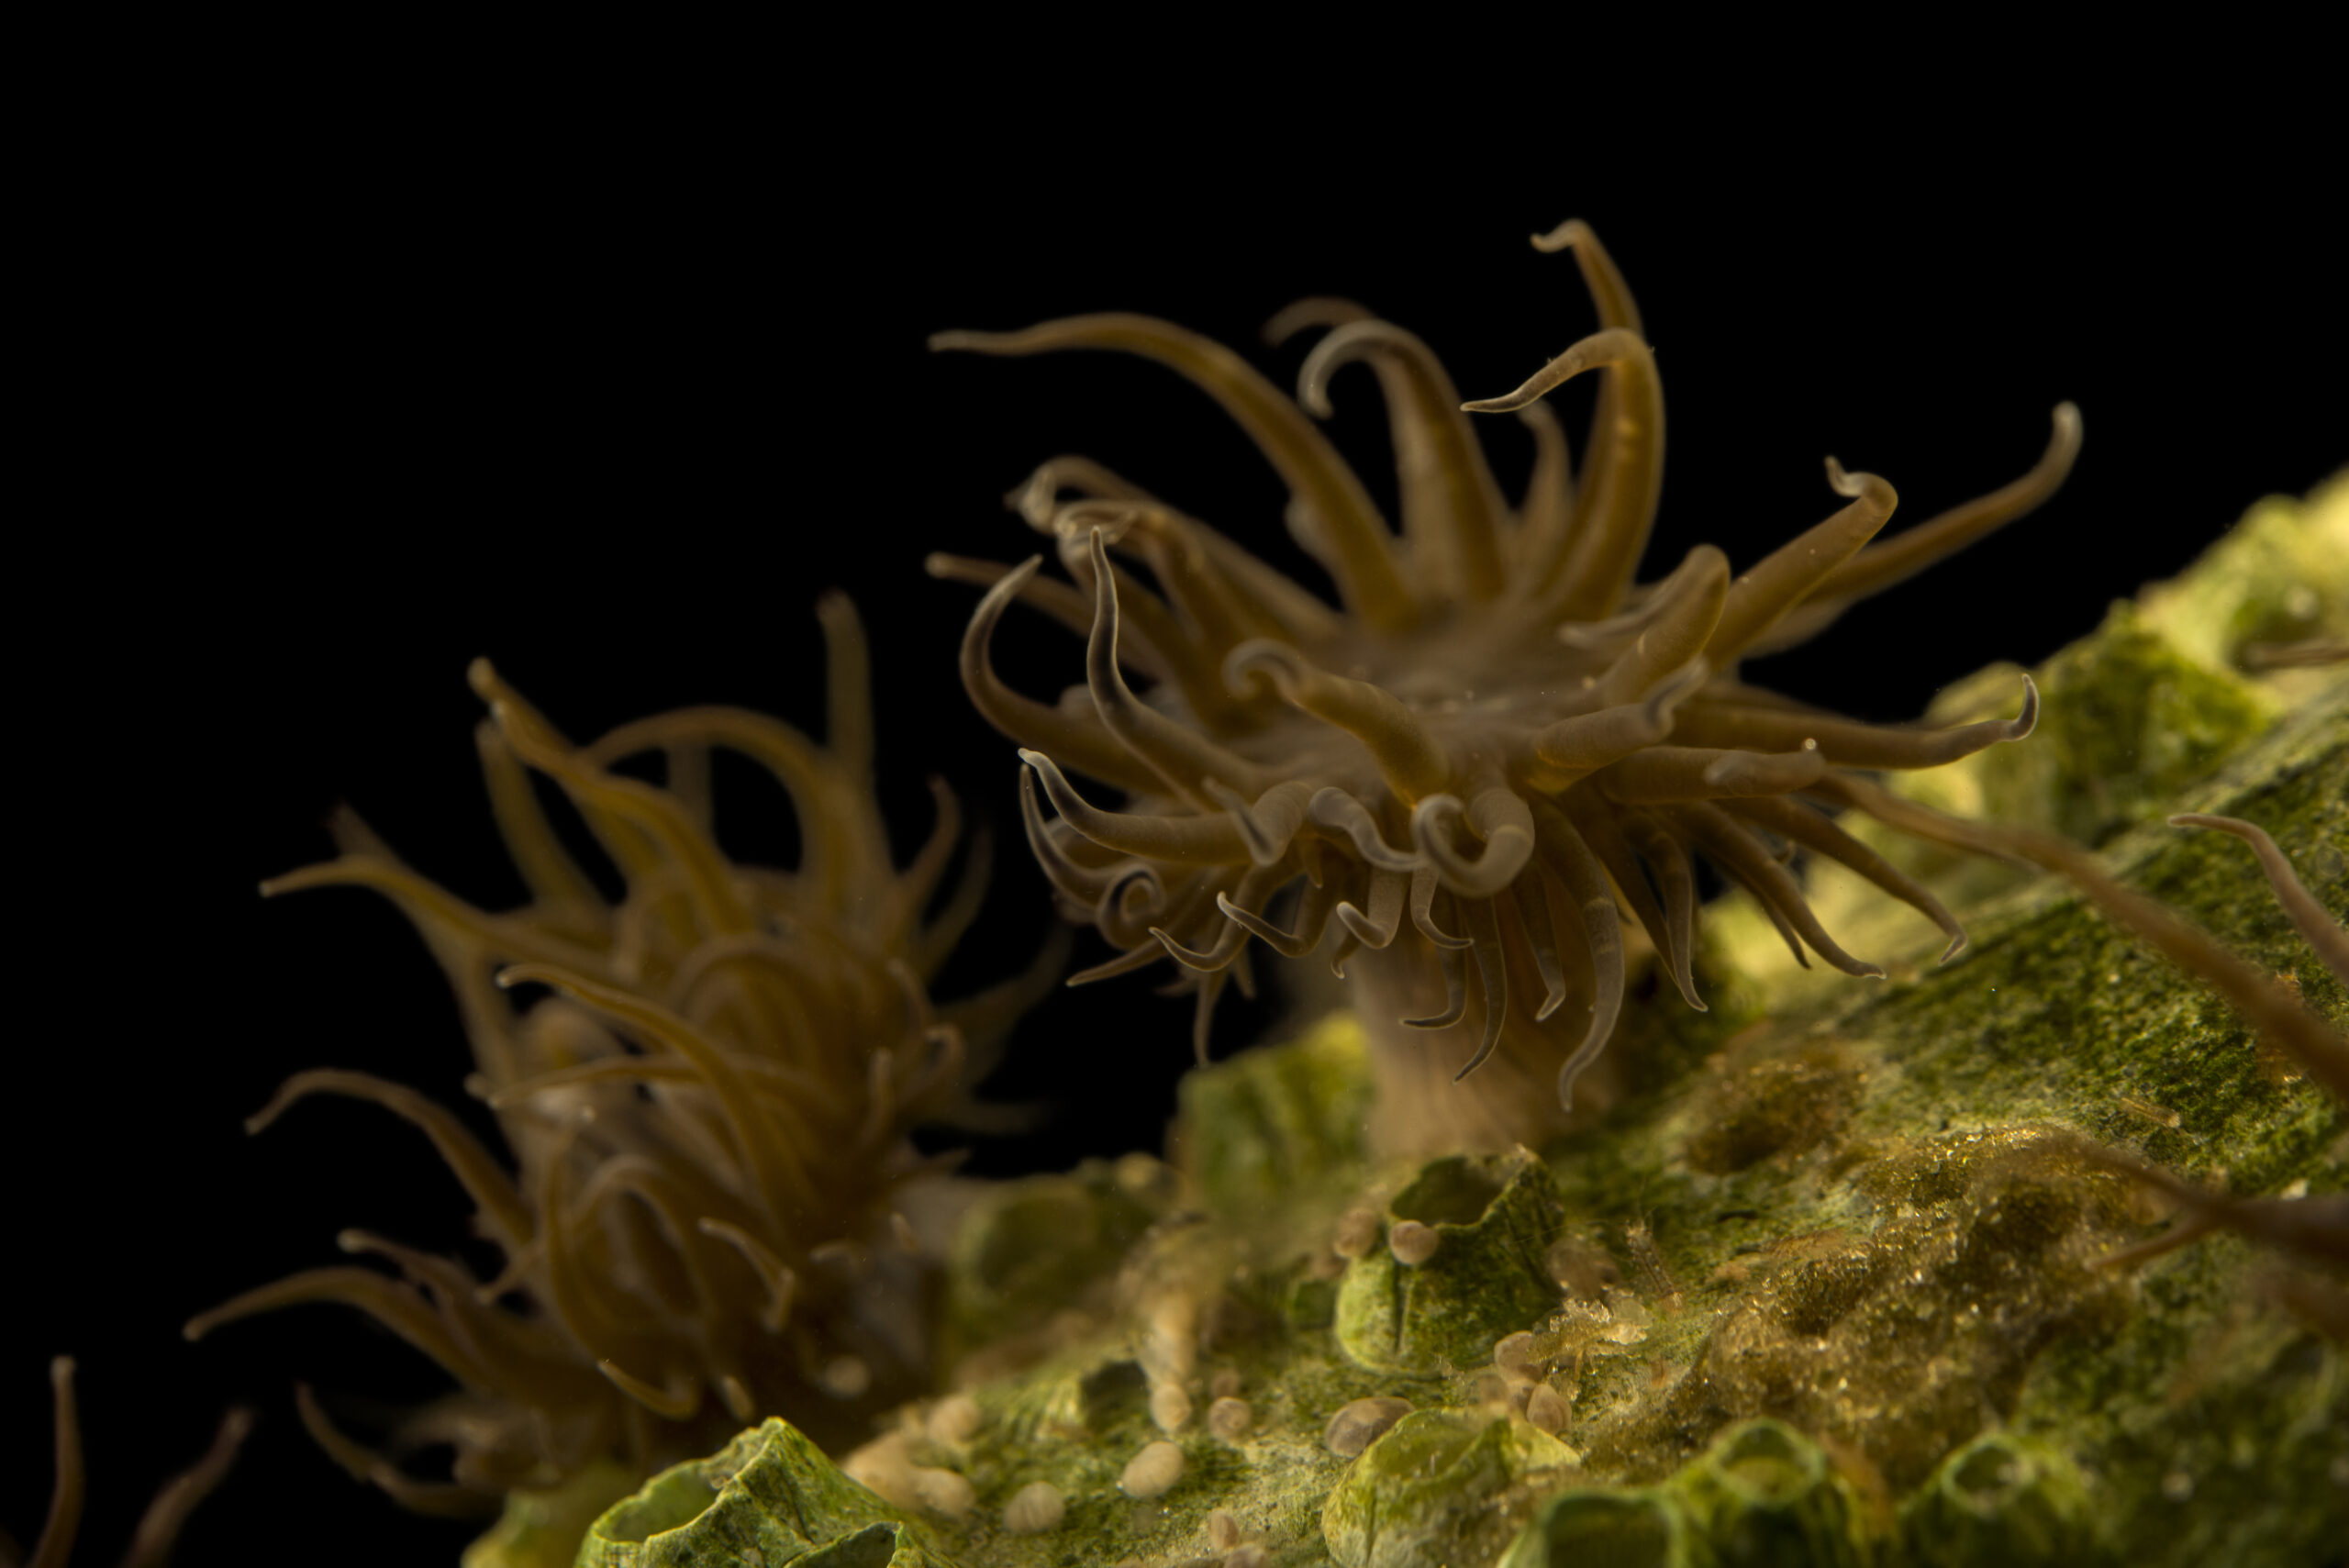 Rock anemone (Aiptasia pallida) at Gulf Specimen Marine Lab and Aquarium.